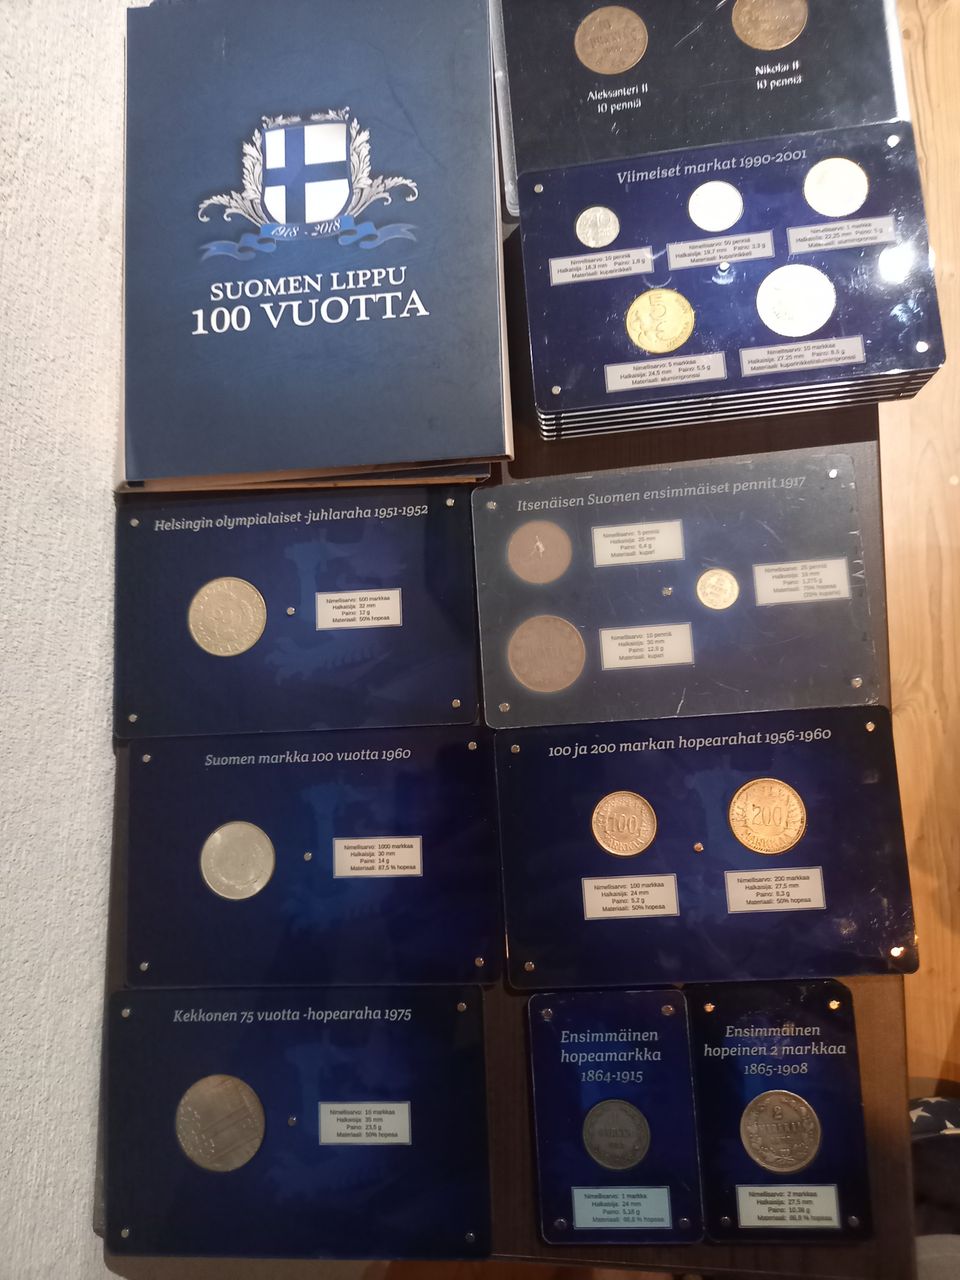 Suomen markka kokoelma ja suomen lippu 100 vuotta